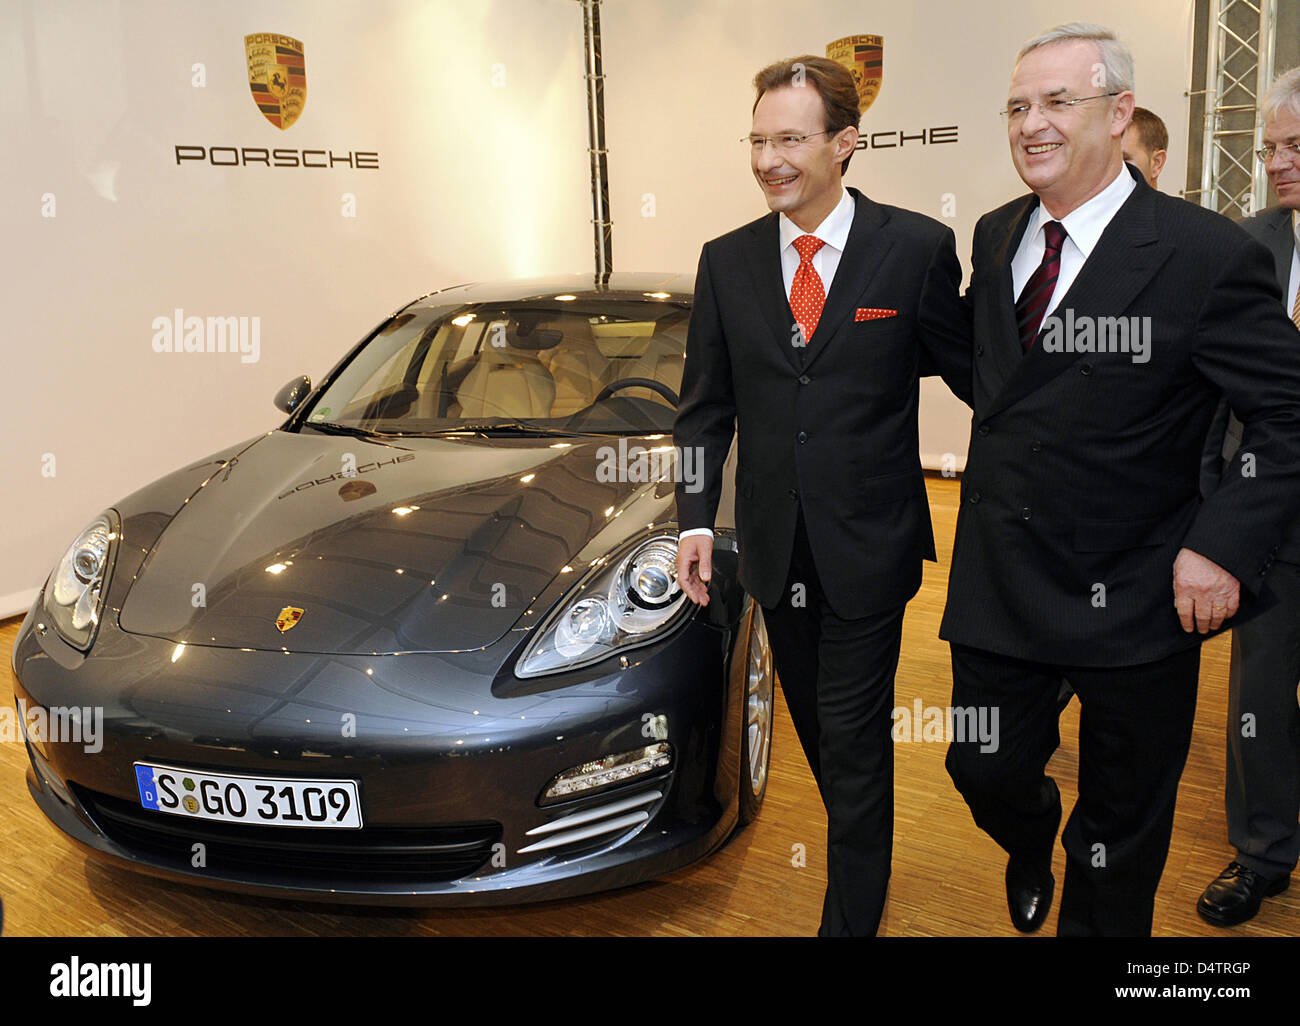 Porsche automobil holding se Porsche Automobil Holding